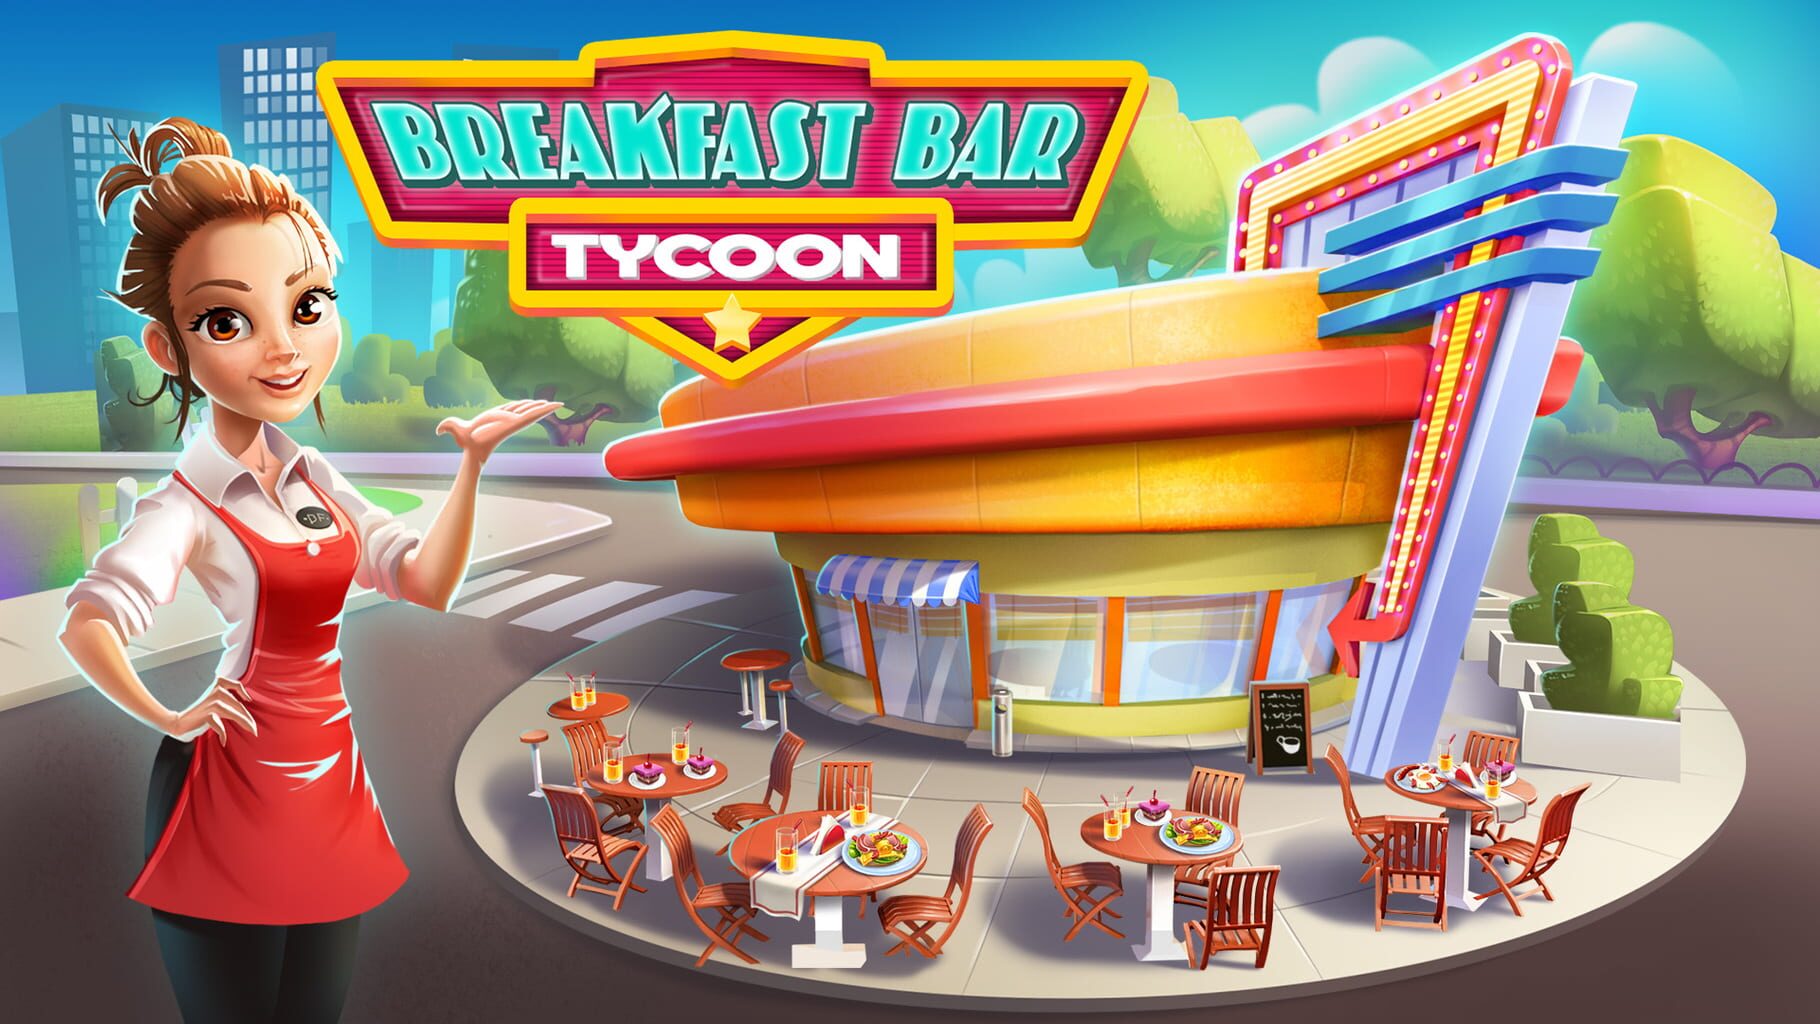 Breakfast Bar Tycoon artwork